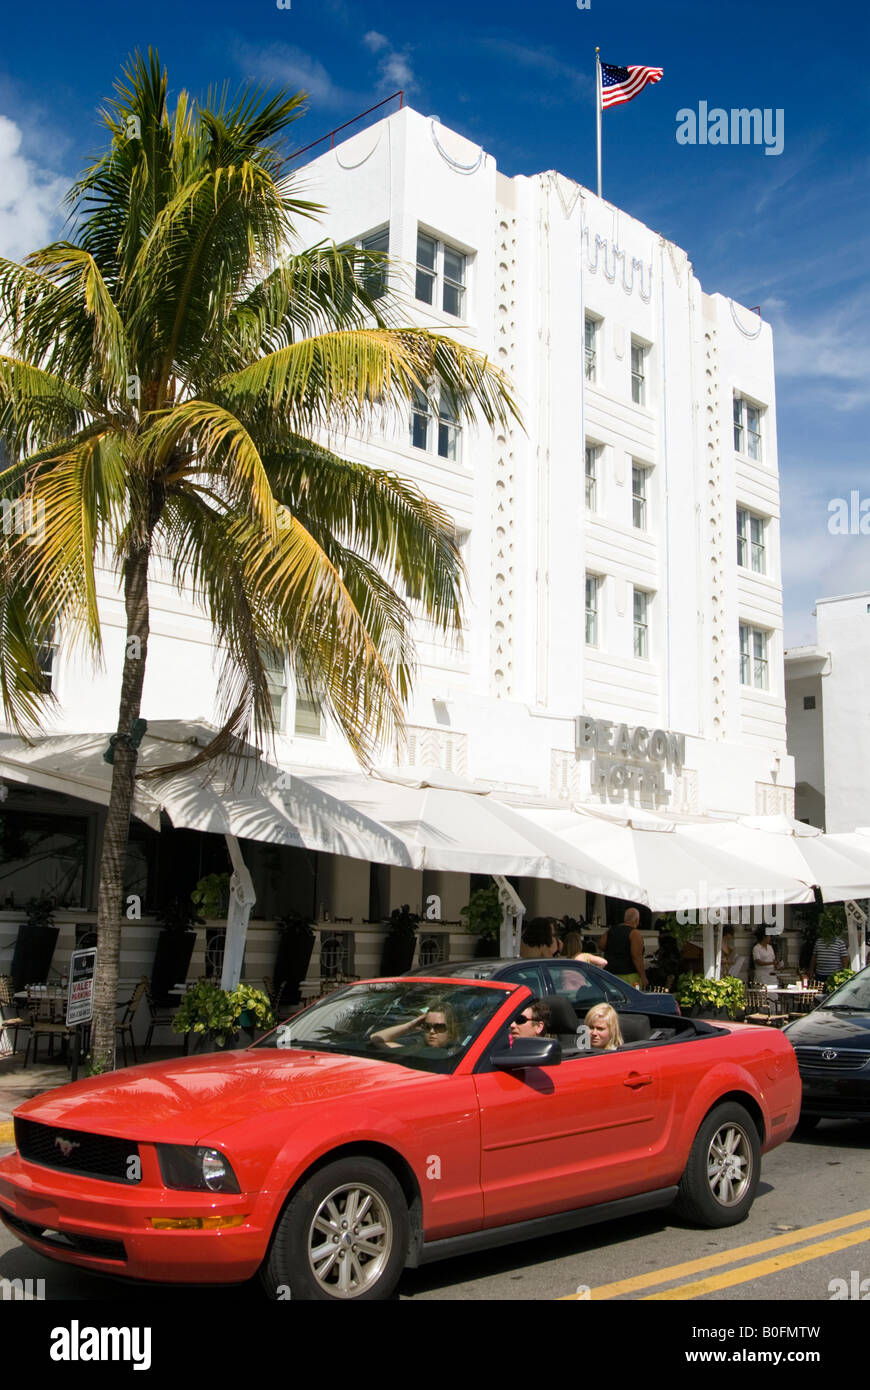 Car cruising Ocean Drive, Miami, Florida USA Stock Photo